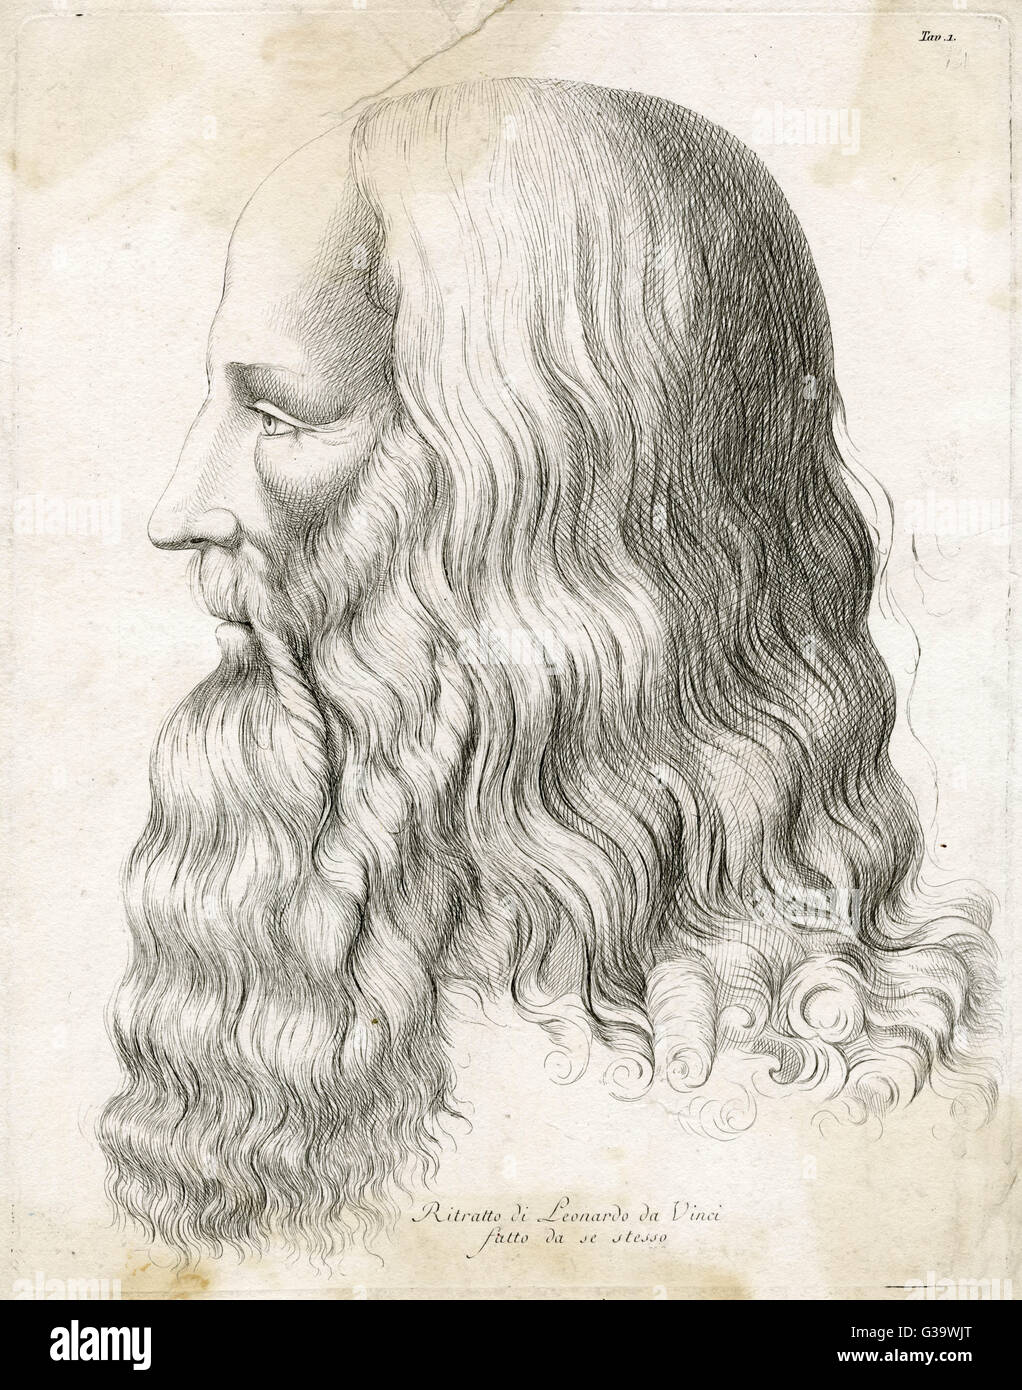 LEONARDO DA VINCI artista italiano: Self-portrait in profilo data: 1452 - 1519 Foto Stock